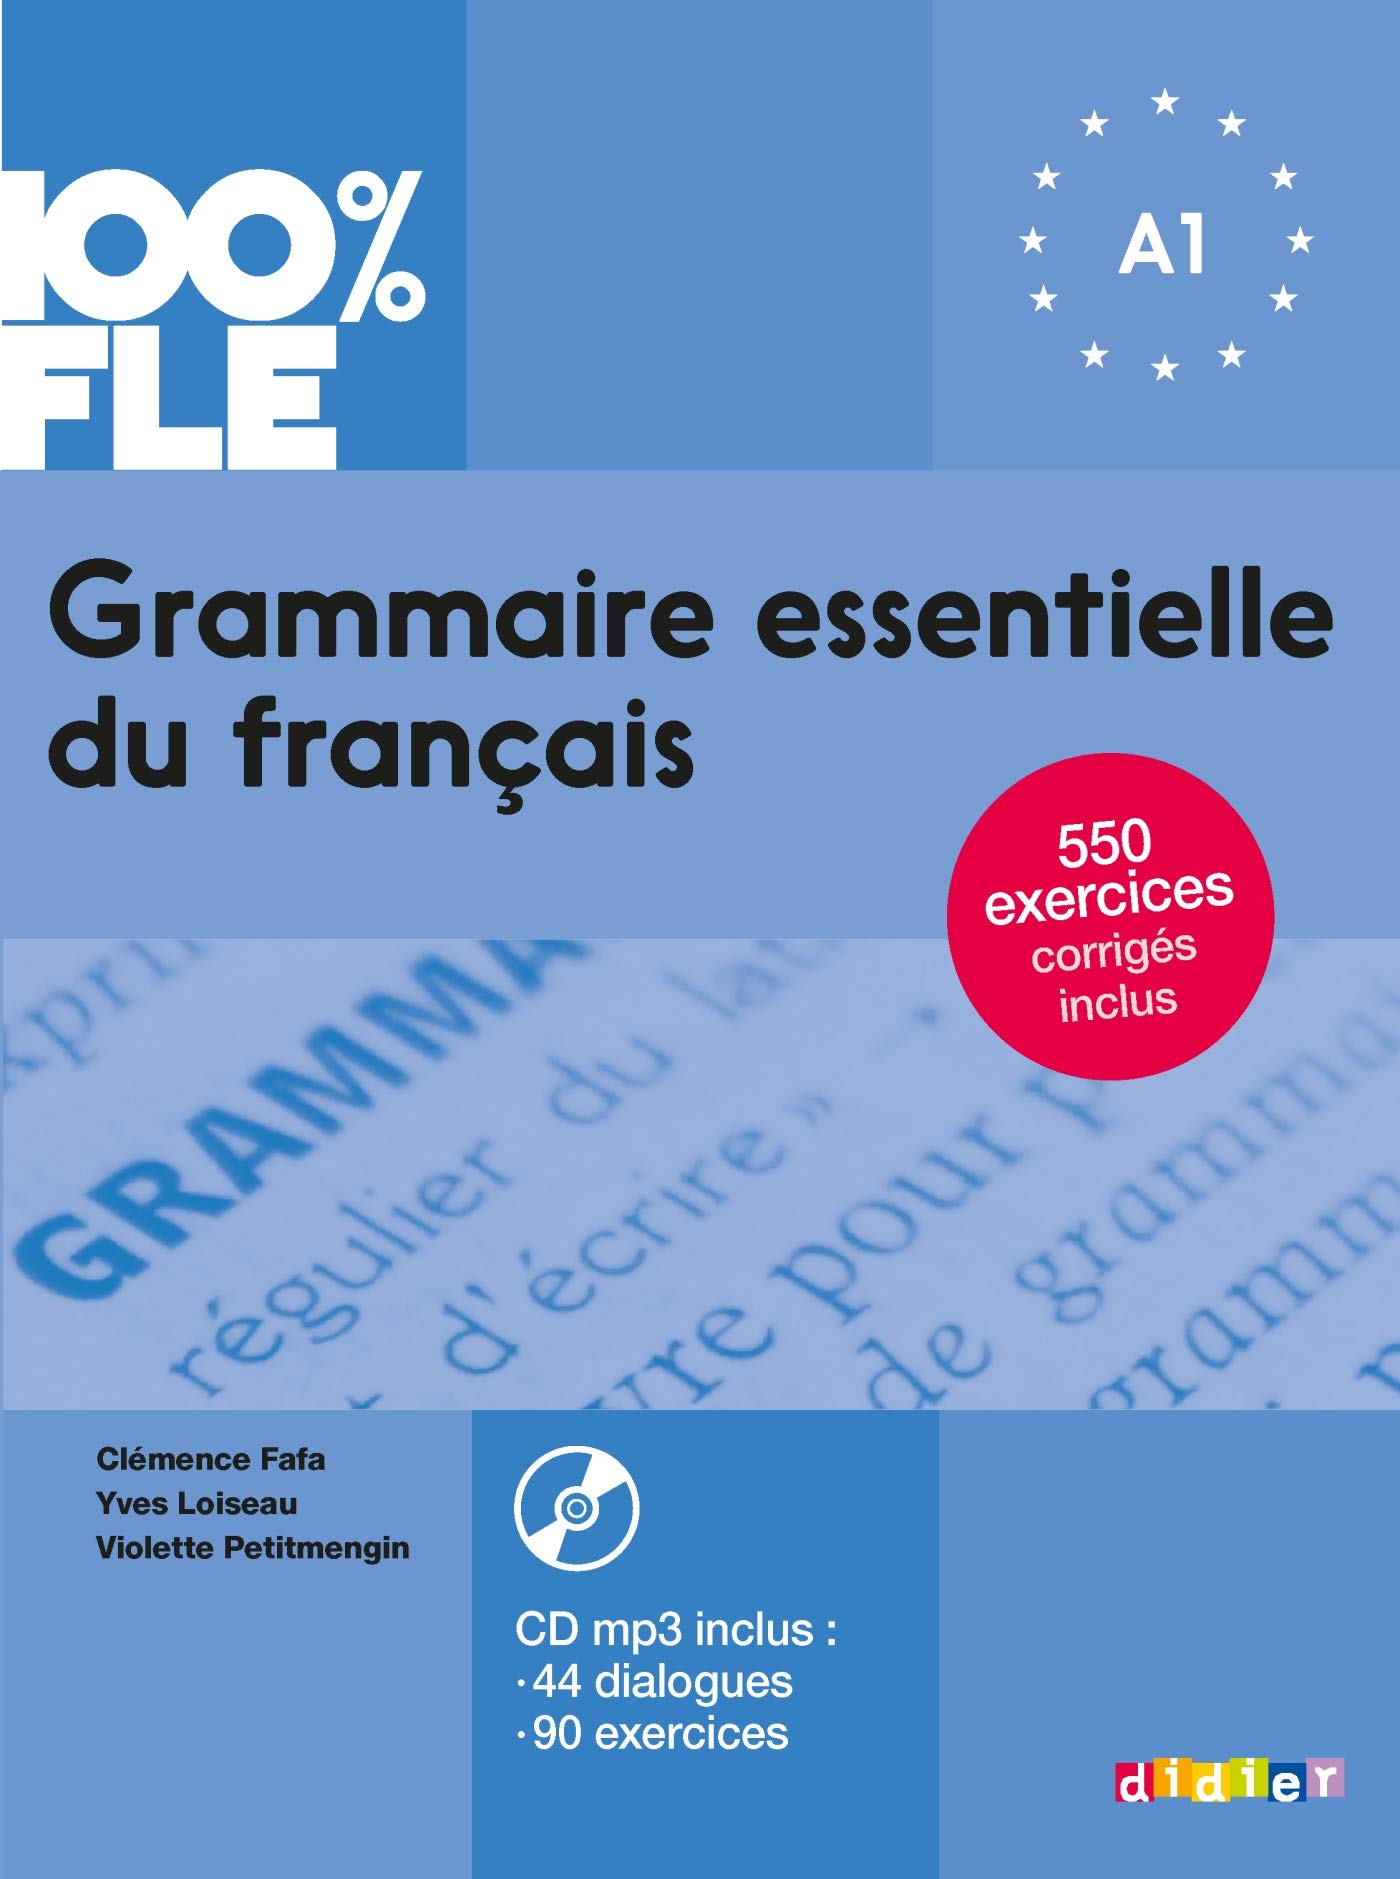 100% FLE GRAMMAIRE ESSENTIELLE DU FRANCAIS A1 - Livre + Audio CD